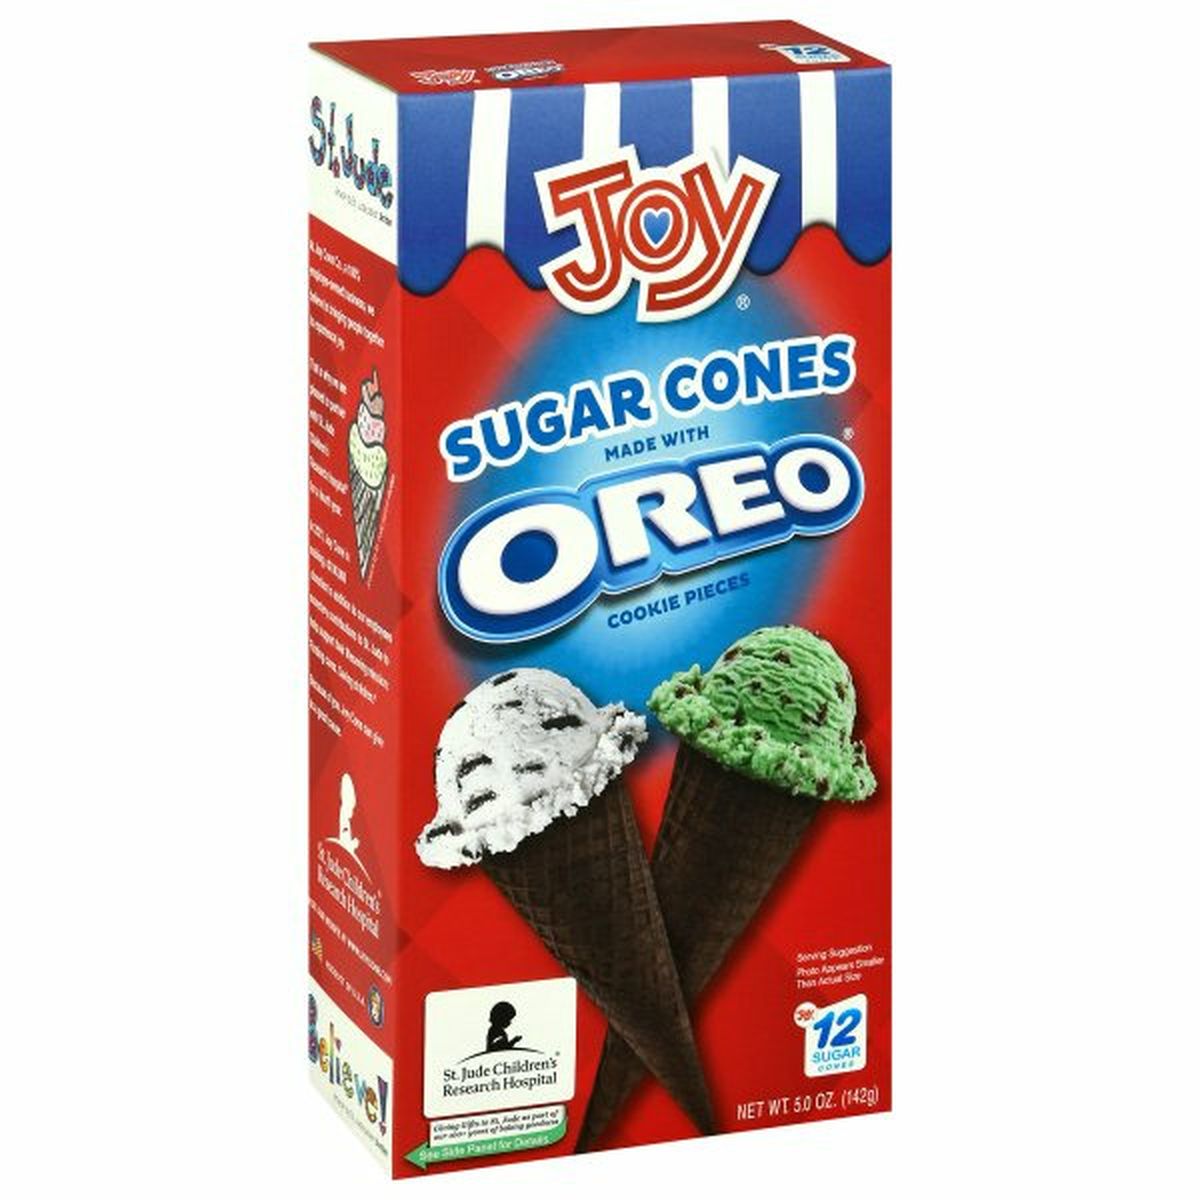 Calories in Joy Sugar Cones, Made with Oreo